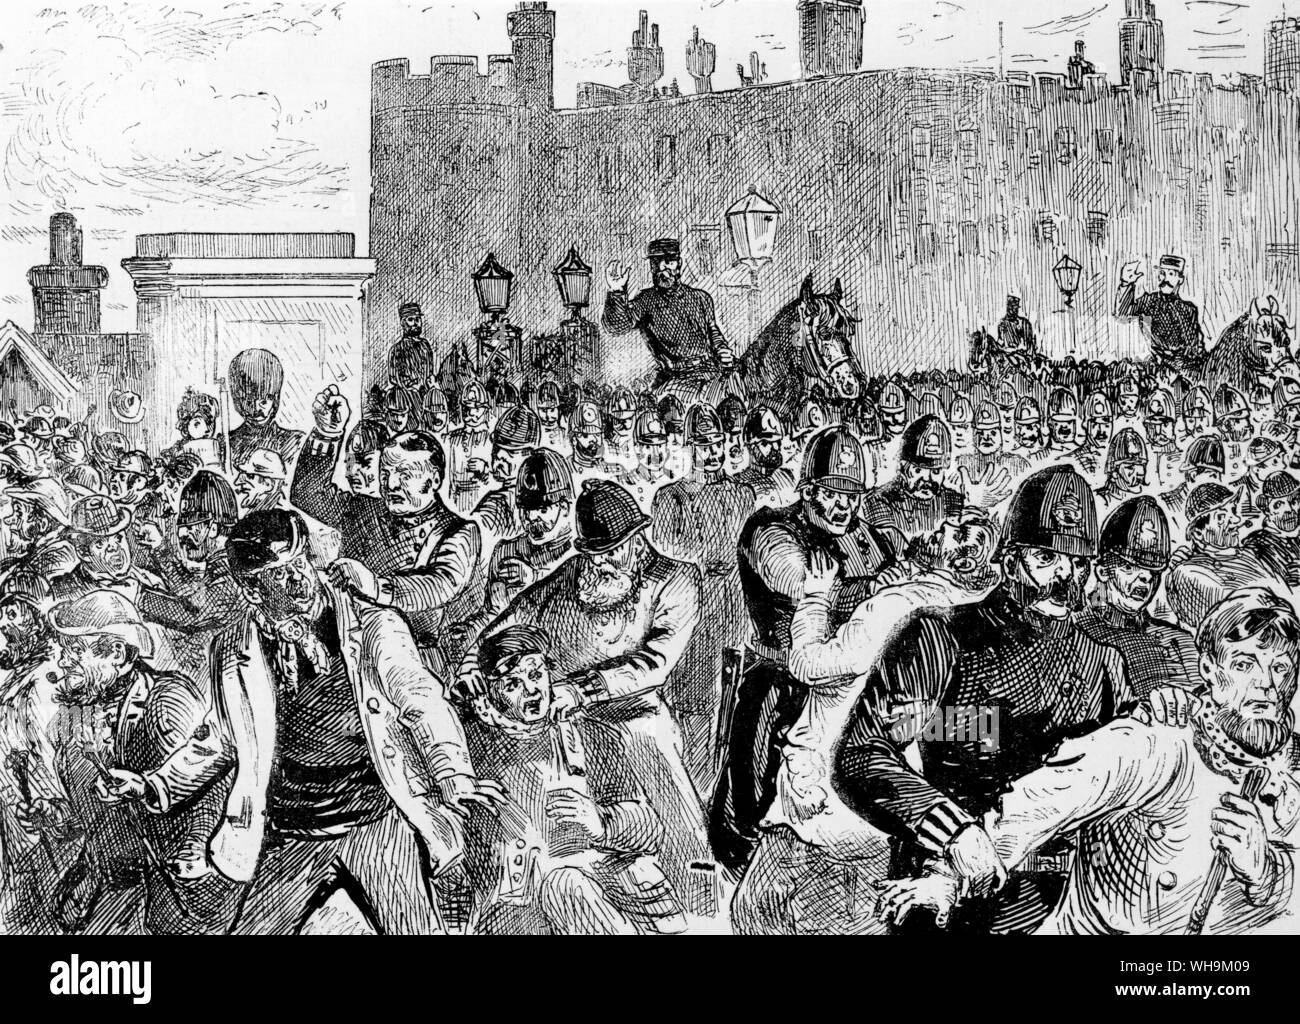 Feb 20 1886: Bildliche Nachrichten Abbildung der großen Unruhen in London. Angriff auf St. James's Palace. Stockfoto